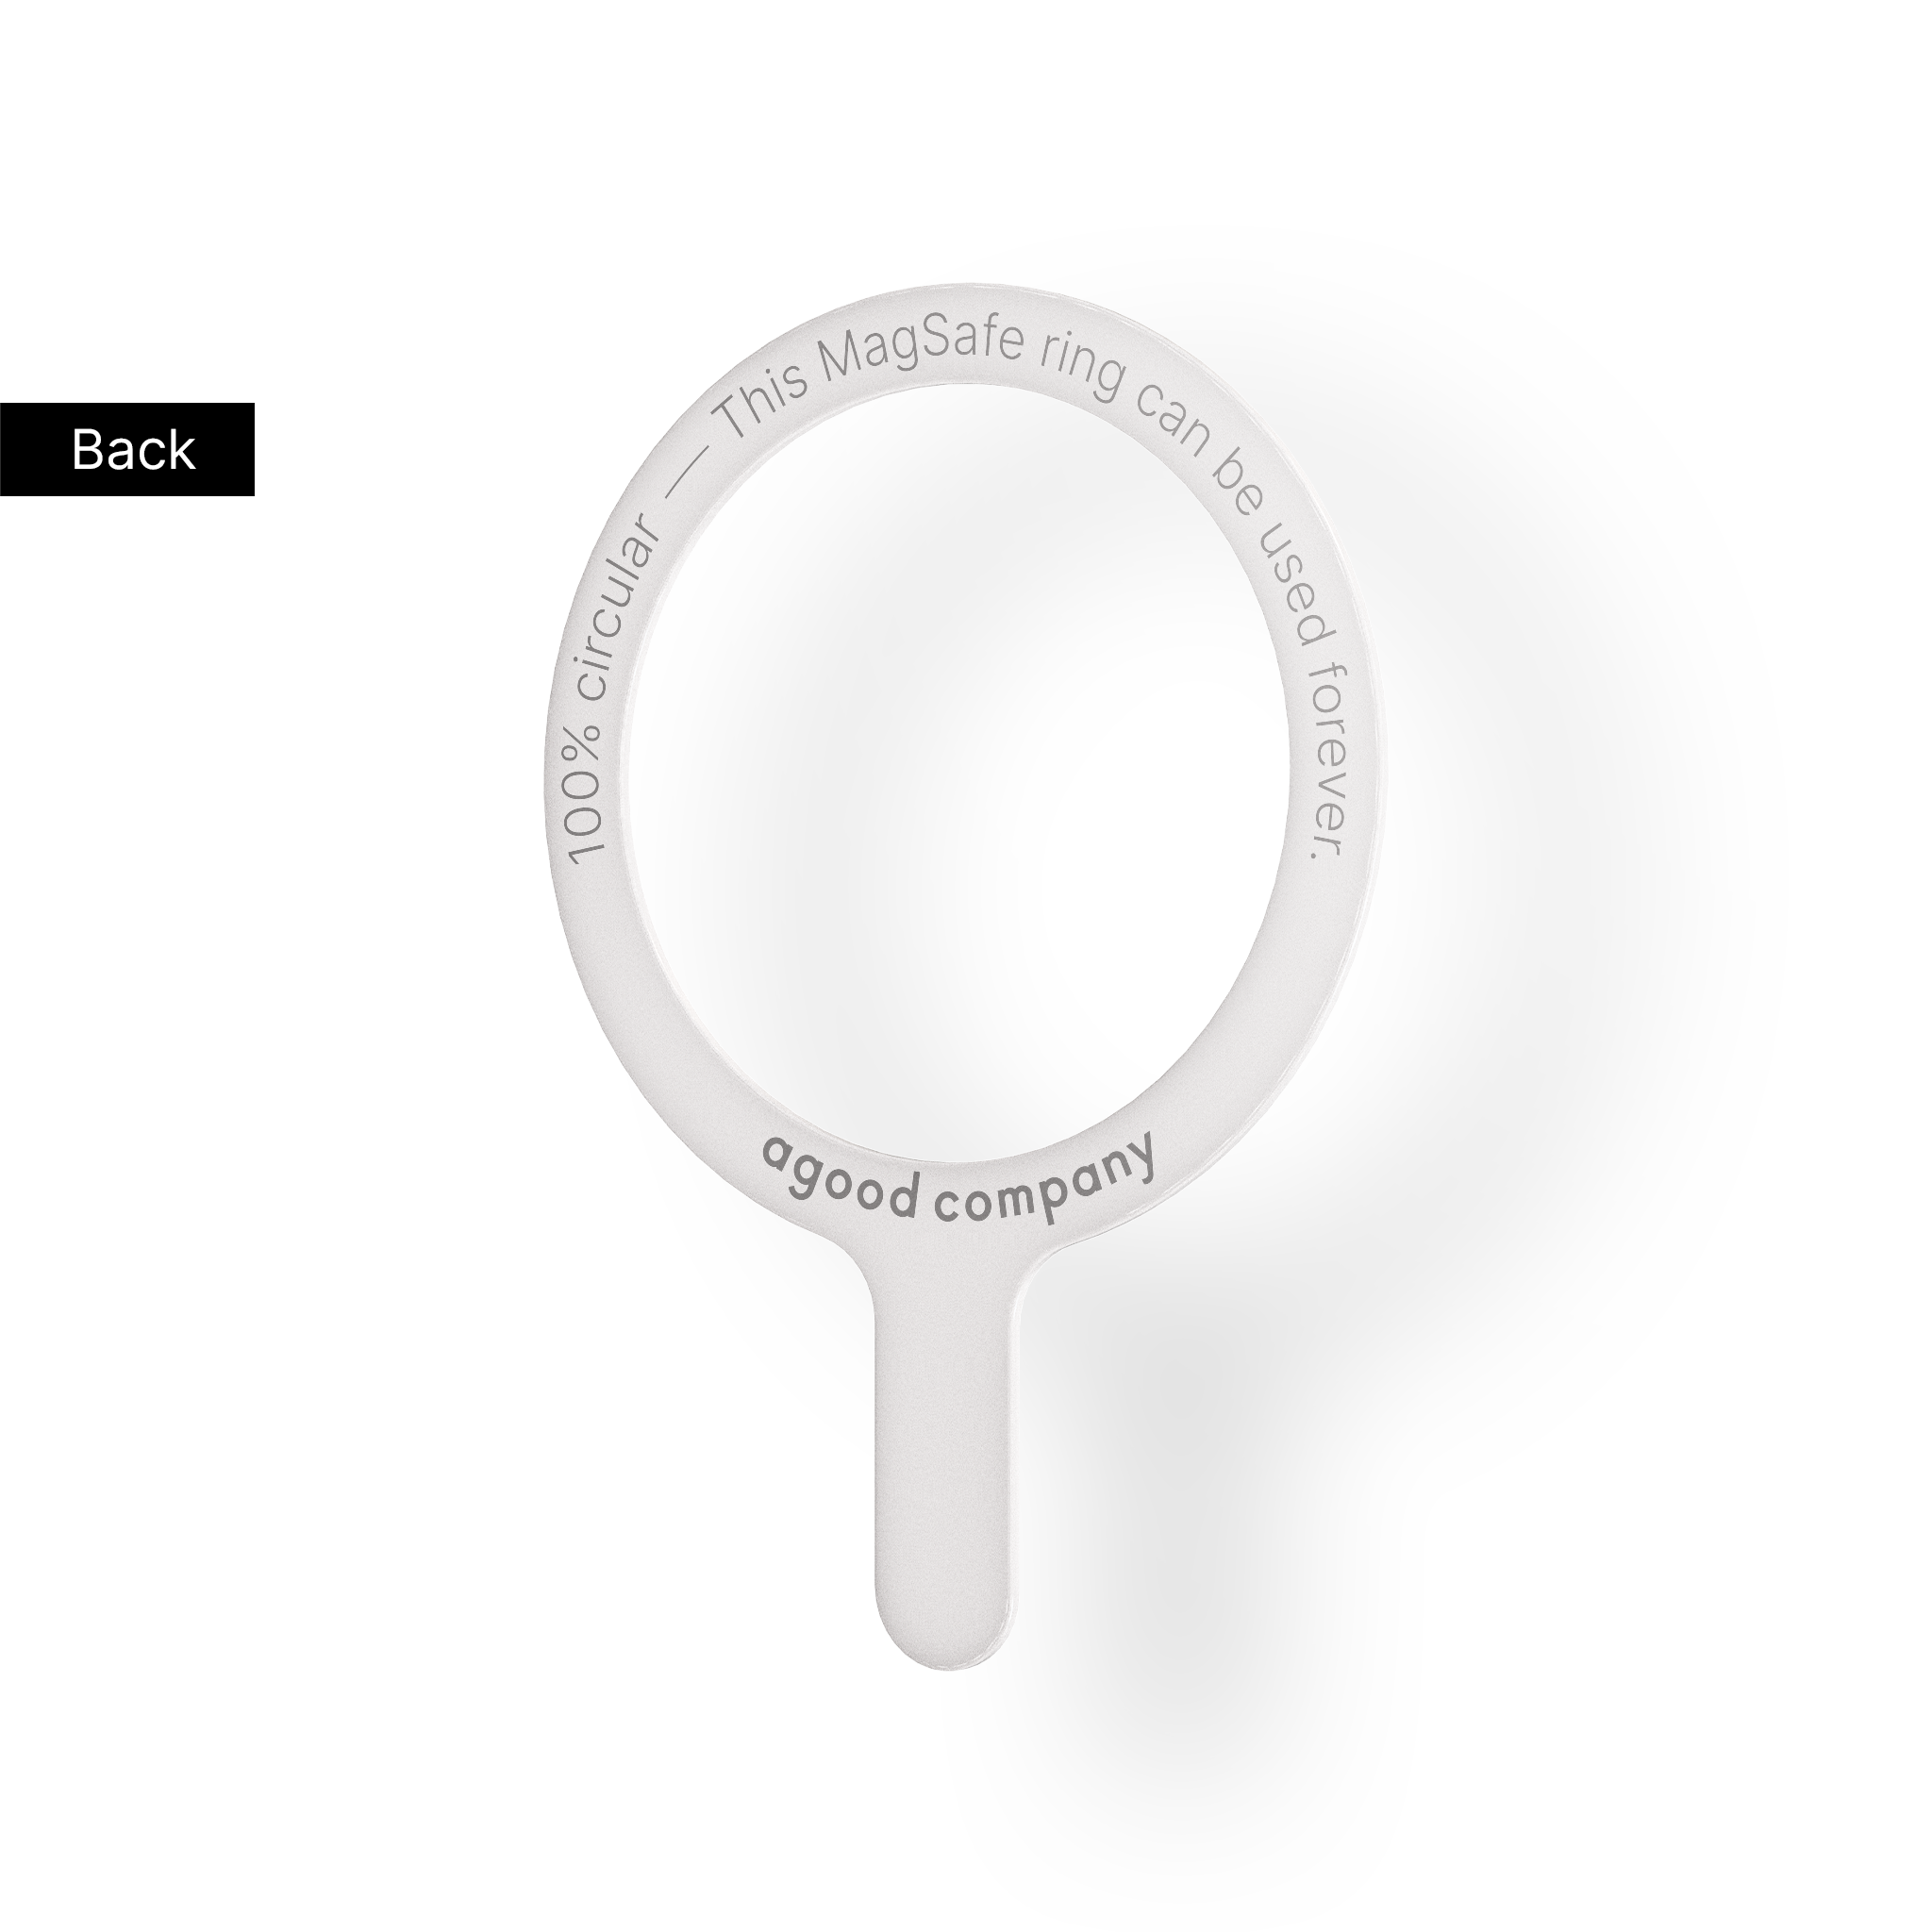 Afmonterbar MagSafe-ring, hvid